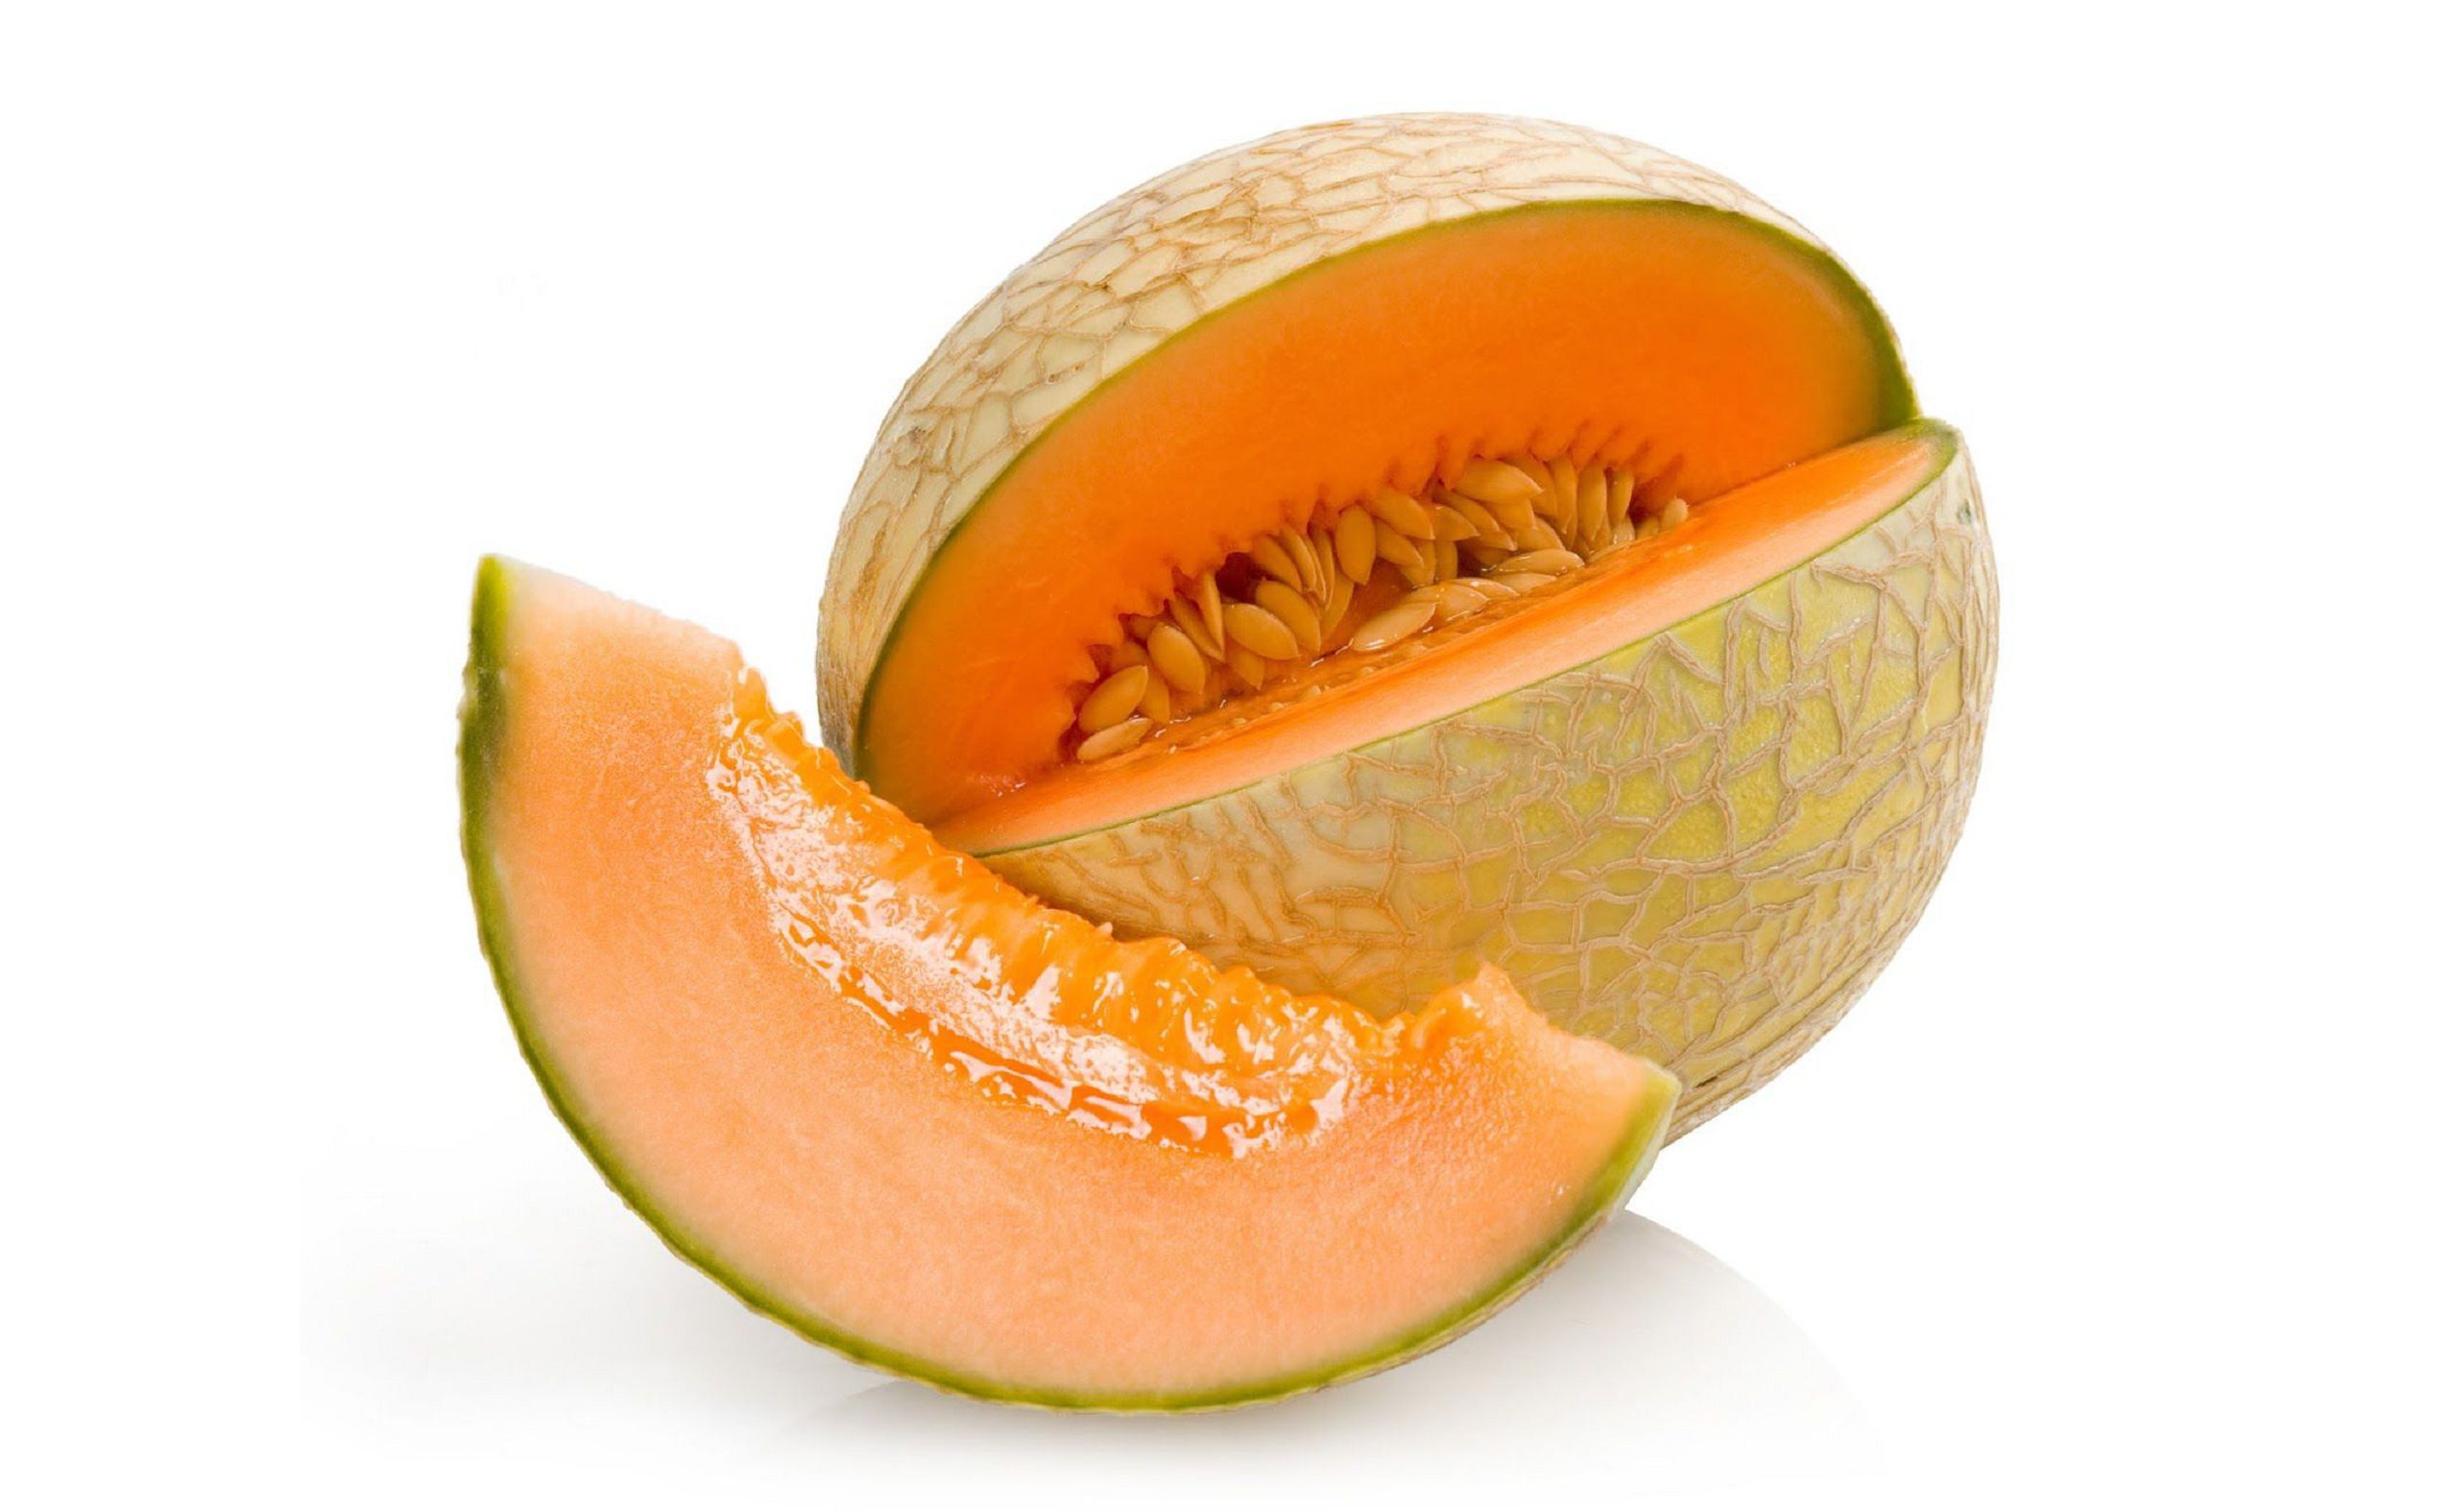 Shio melon